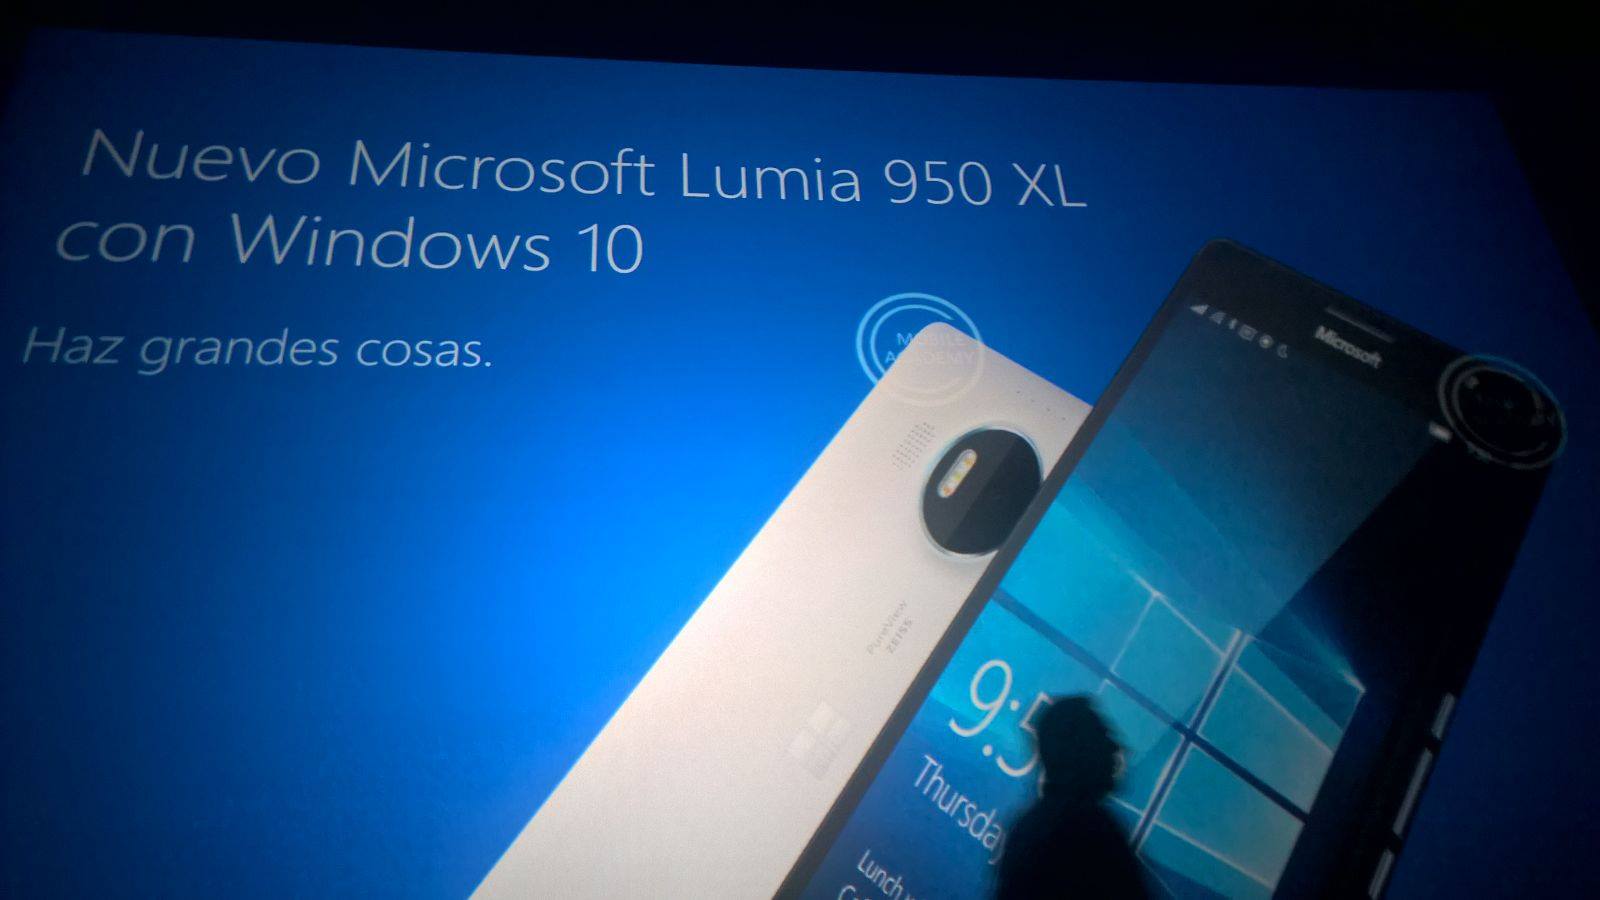 Microsoftの｢Lumia 950｣シリーズに関するスライド資料が流出 − スペックの一部が明らかに